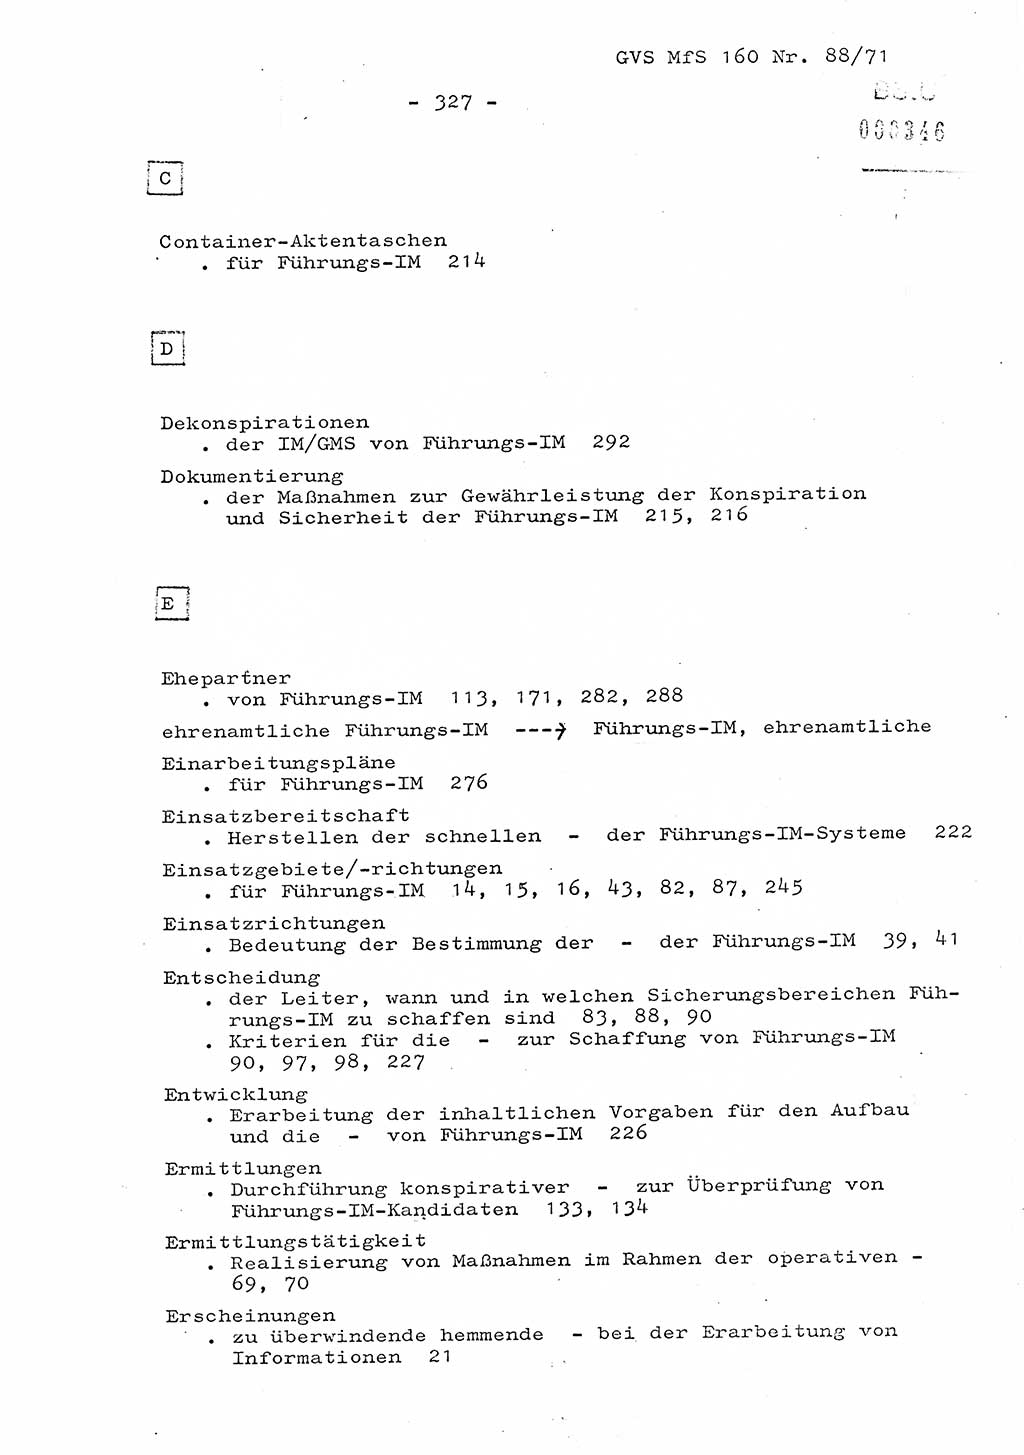 Dissertation Oberstleutnant Josef Schwarz (BV Schwerin), Major Fritz Amm (JHS), Hauptmann Peter Gräßler (JHS), Ministerium für Staatssicherheit (MfS) [Deutsche Demokratische Republik (DDR)], Juristische Hochschule (JHS), Geheime Verschlußsache (GVS) 160-88/71, Potsdam 1972, Seite 327 (Diss. MfS DDR JHS GVS 160-88/71 1972, S. 327)